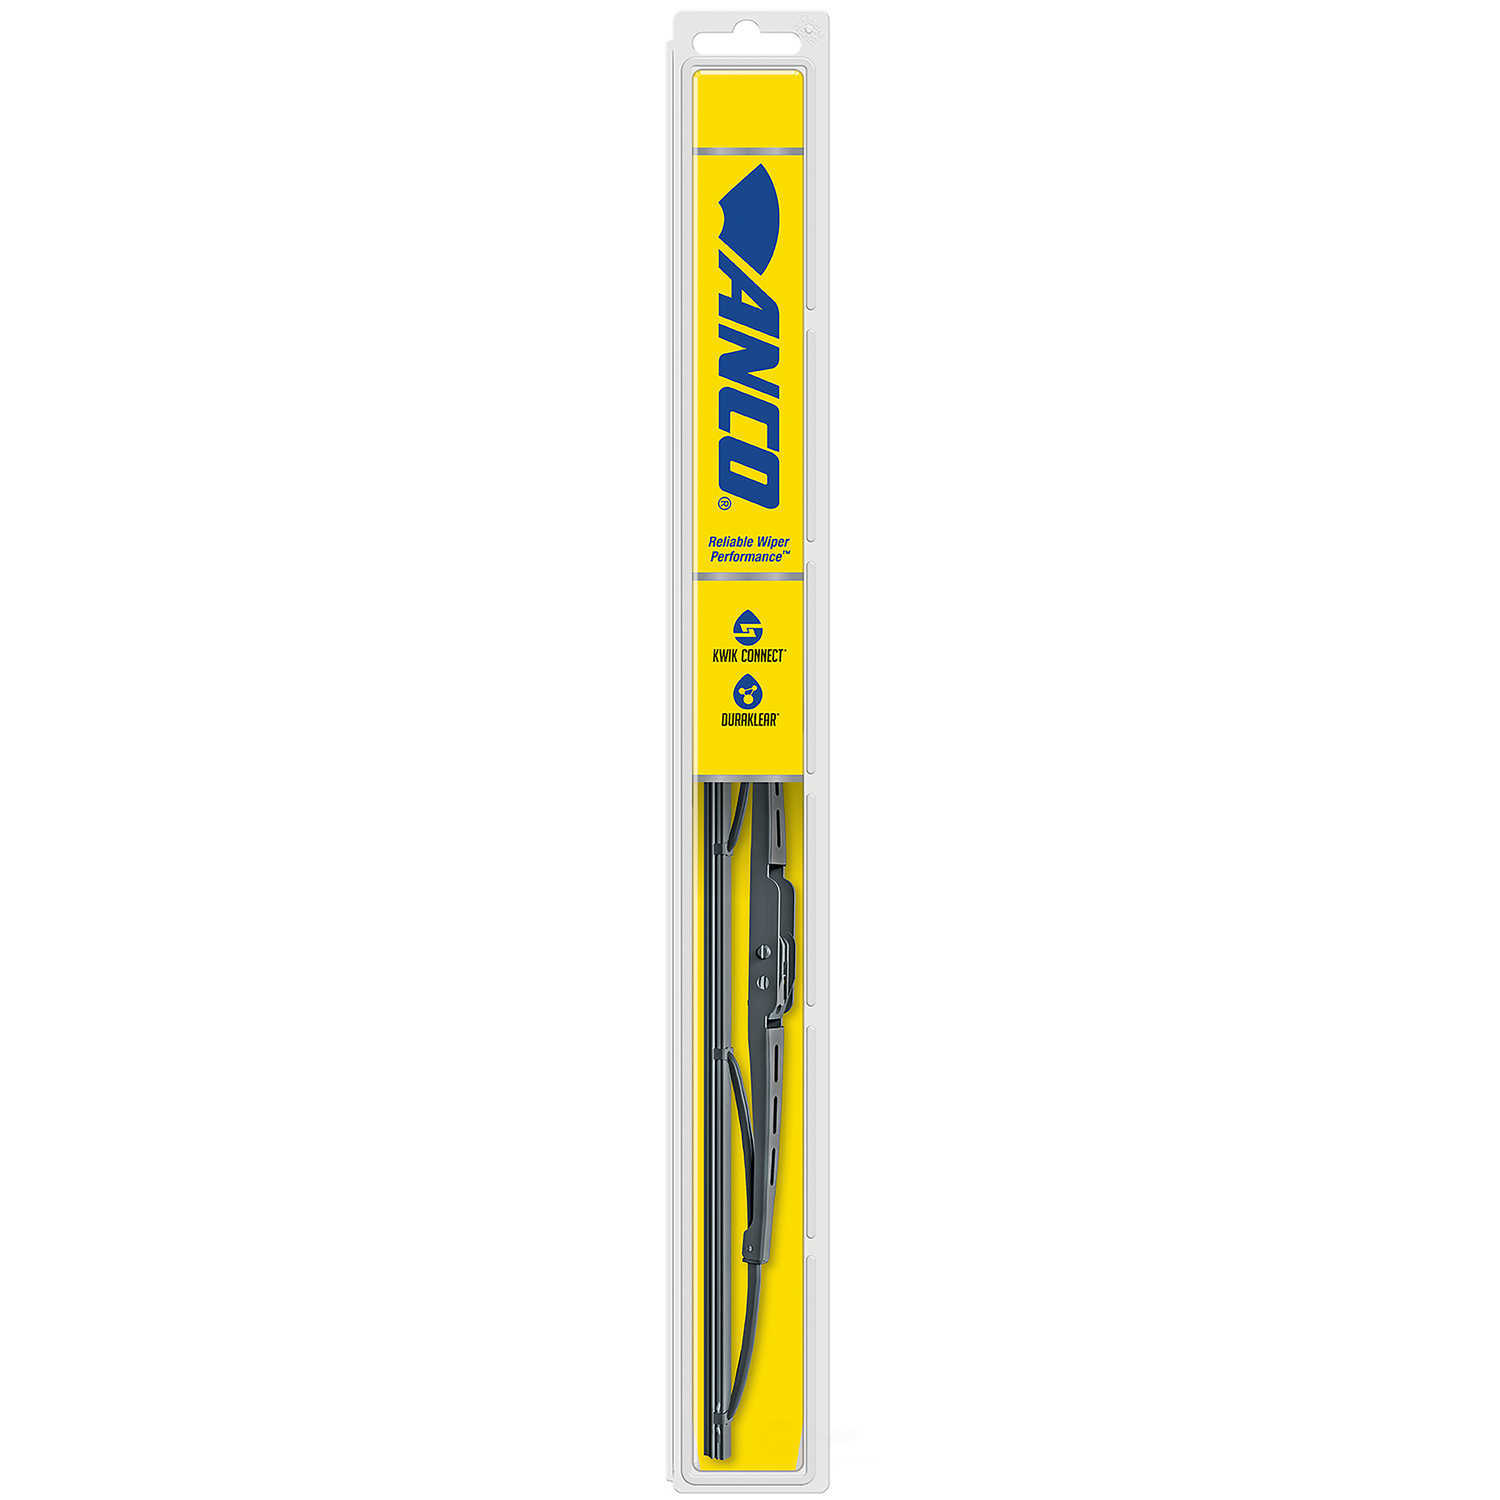 ANCO WIPER PRODUCTS - ANCO 31-Series Wiper Blade - ANC 31-14